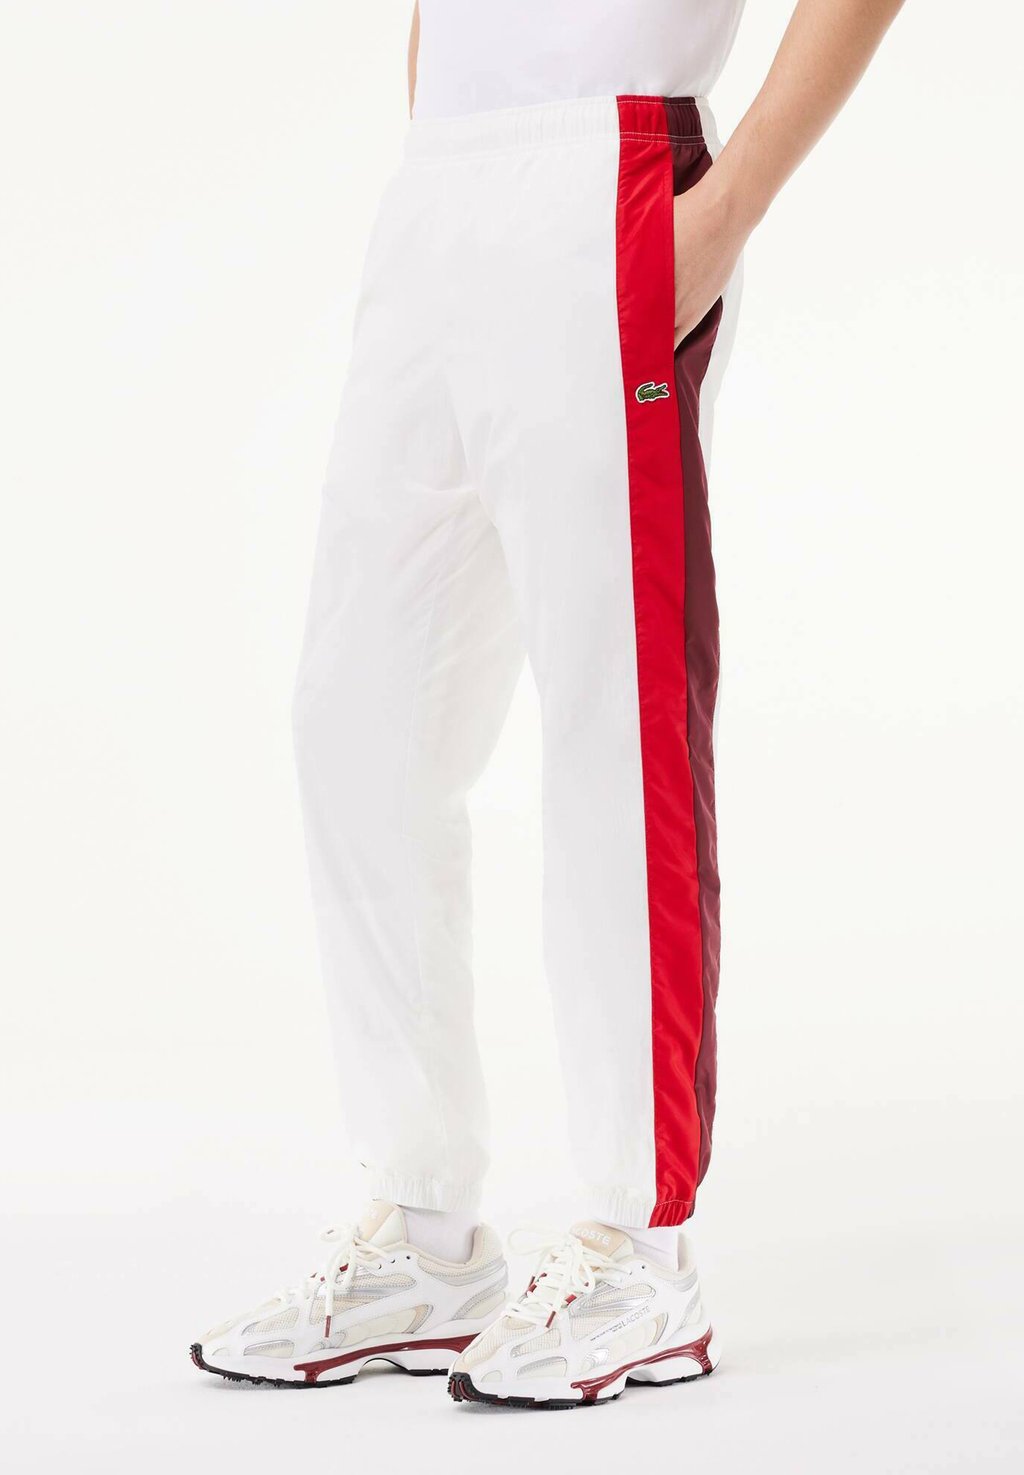 Спортивные штаны Lacoste, цвет blanc bordeaux rouge igy кепка ziener igy коричневый